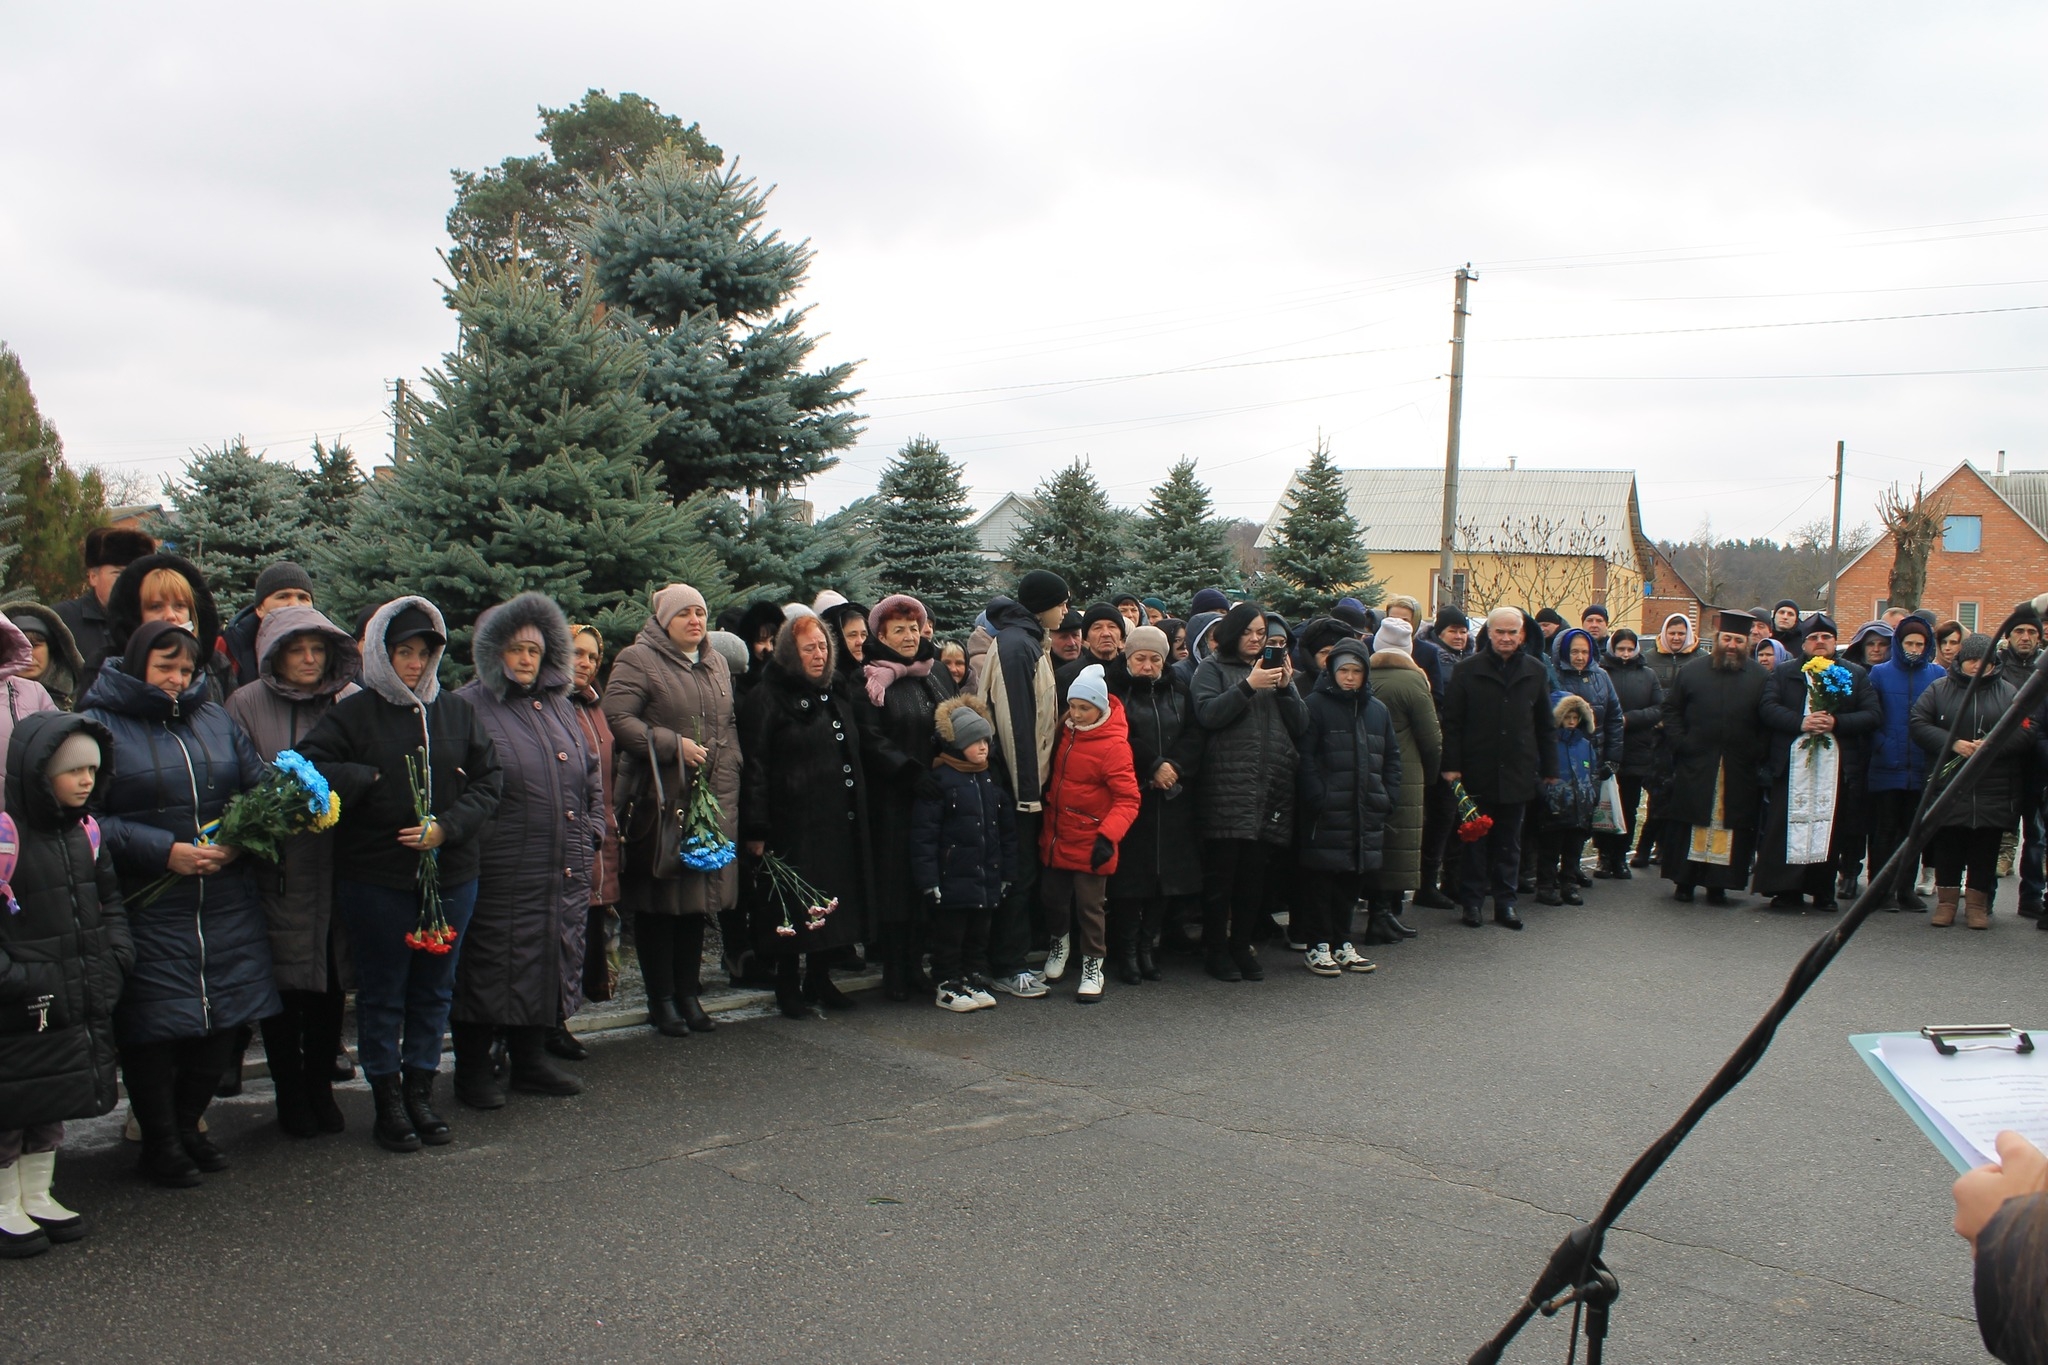 В ліцеї на Калинівщині відкрили меморіальні дошки на честь полеглих Героїв